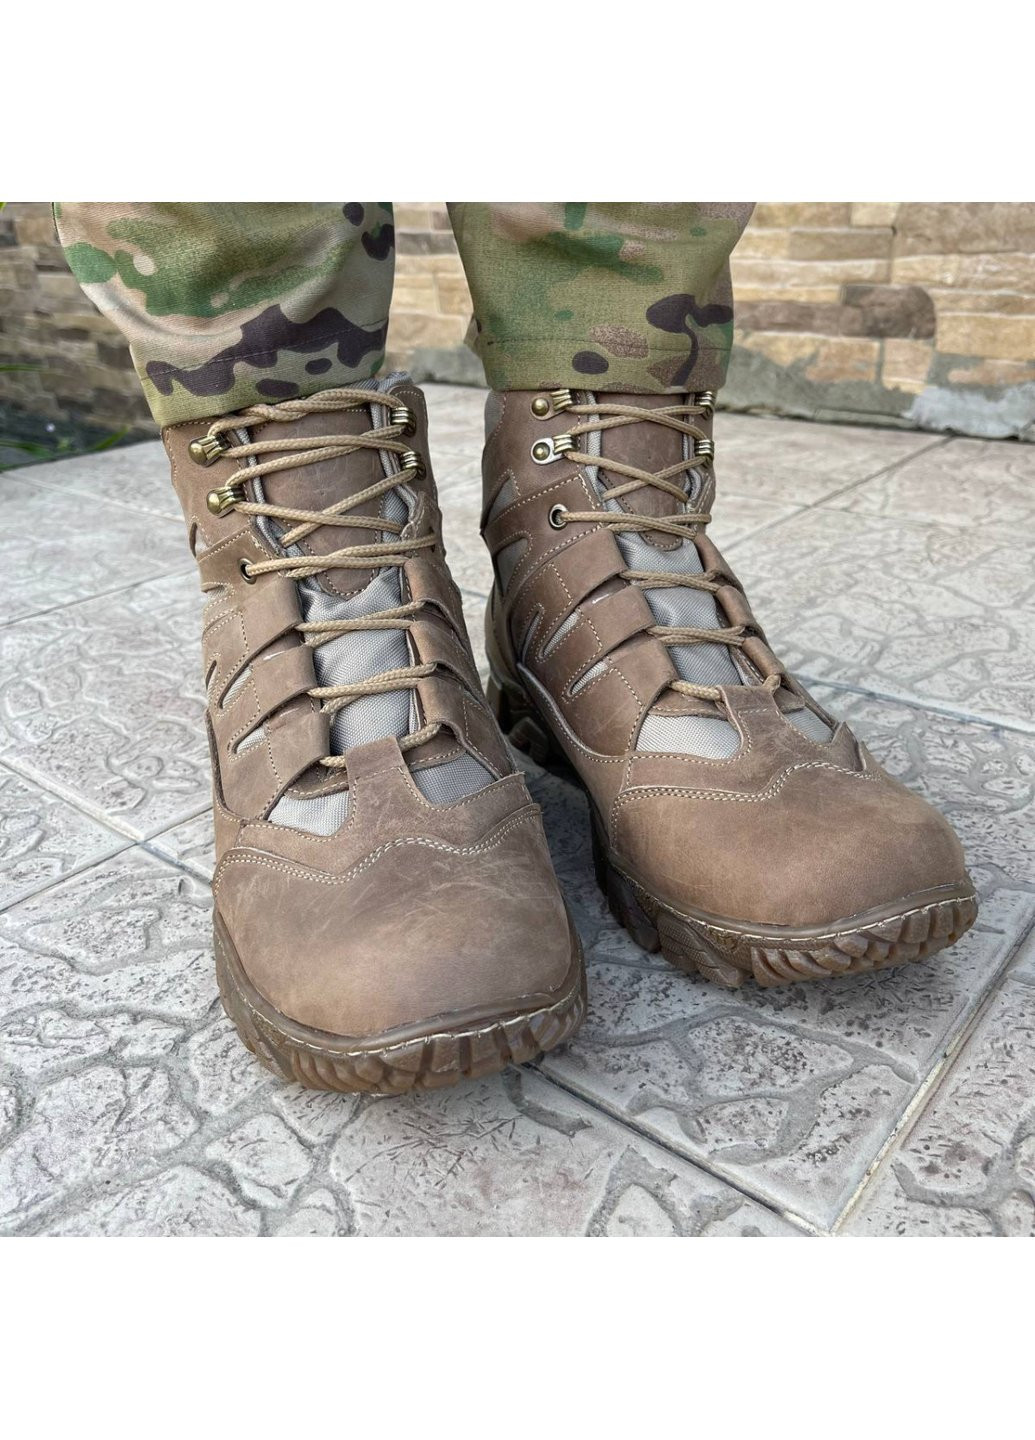 Коричневые осенние ботинки военные тактические всу (зсу) 7526 41 р 26,5 см коричневые Power